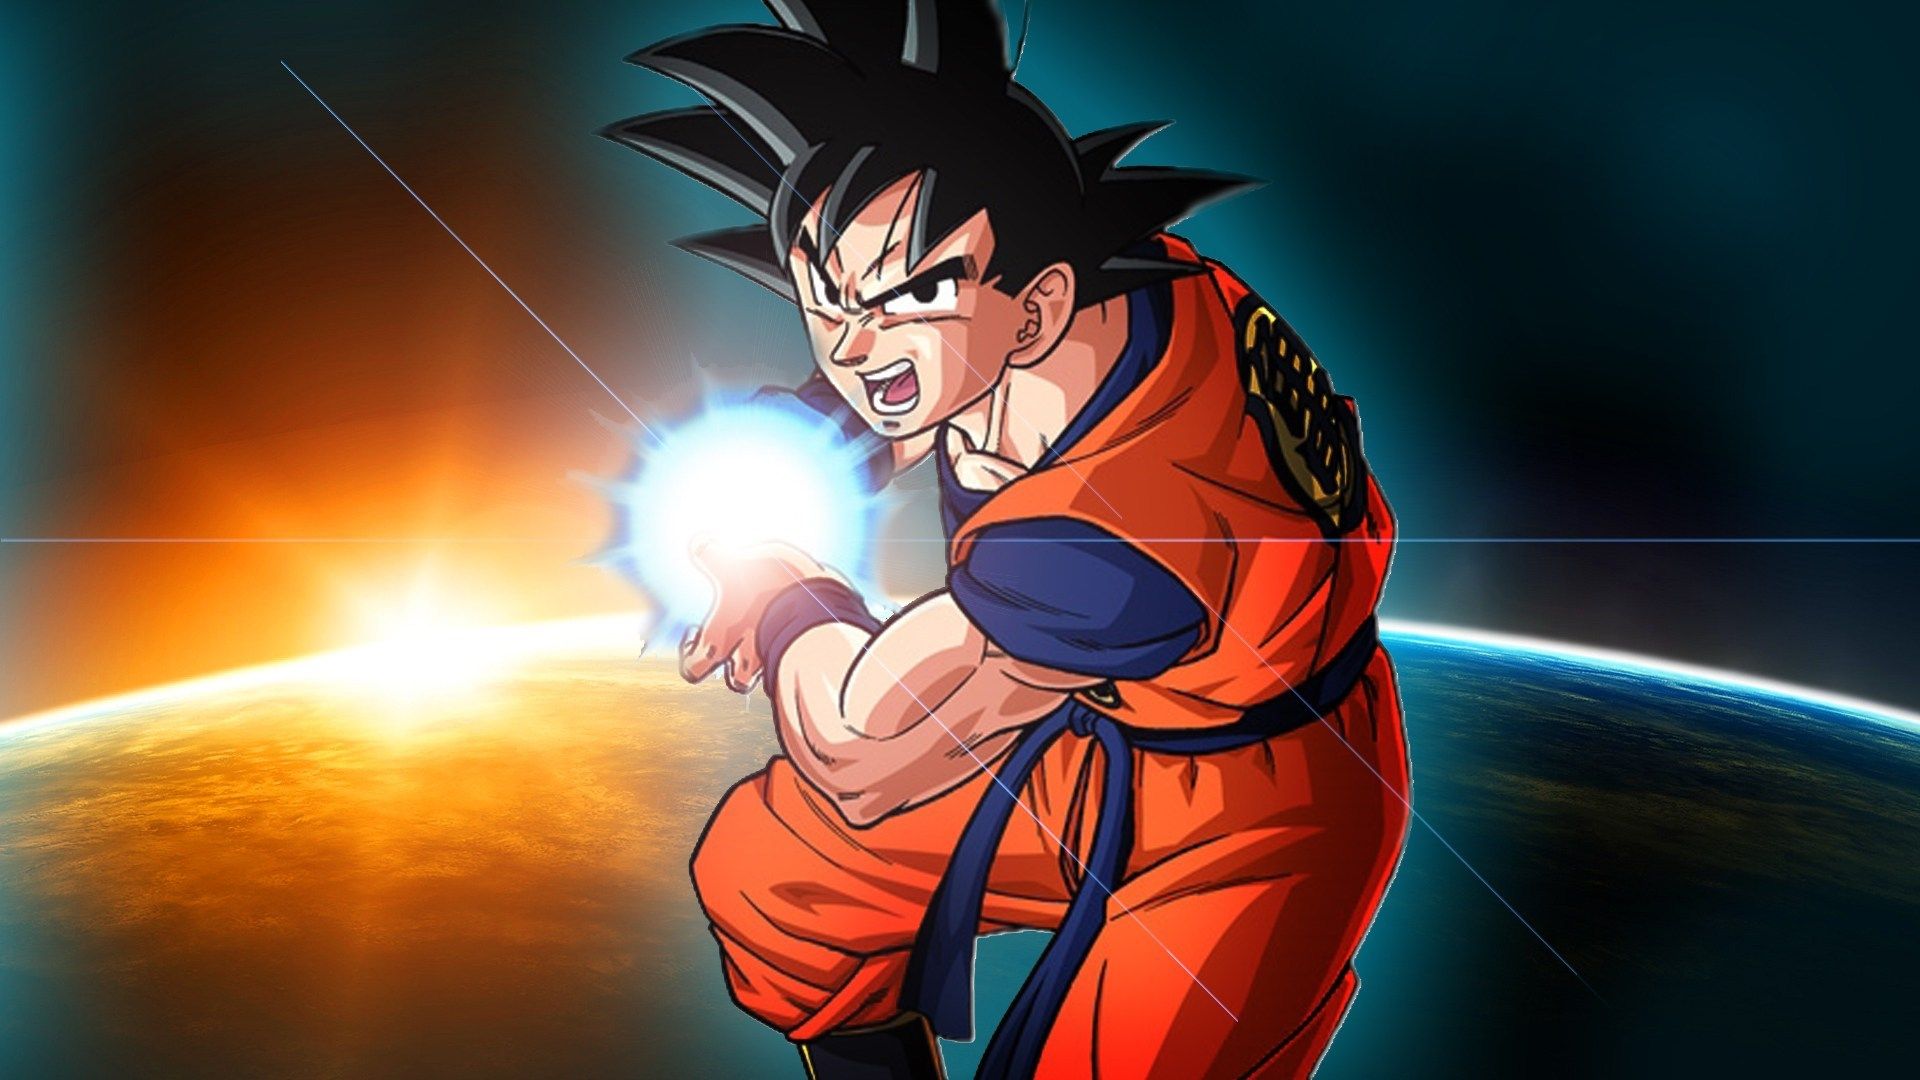 Dragon Ball Z: Kakarot racconterà fatti inediti della storia di Goku